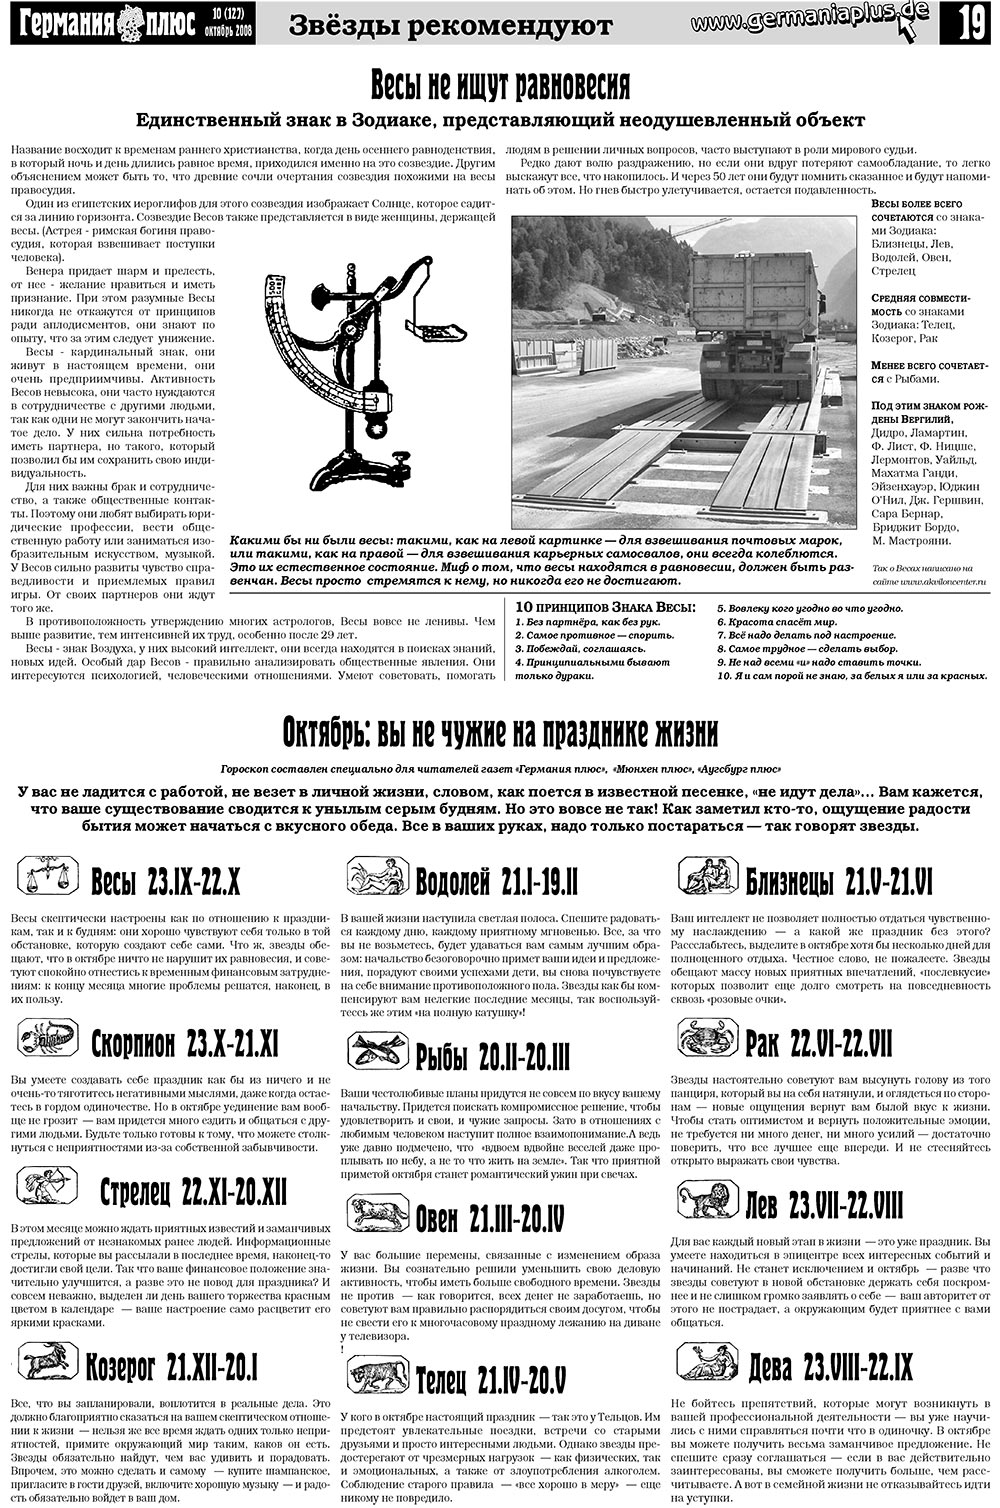 Германия плюс (газета). 2008 год, номер 10, стр. 23